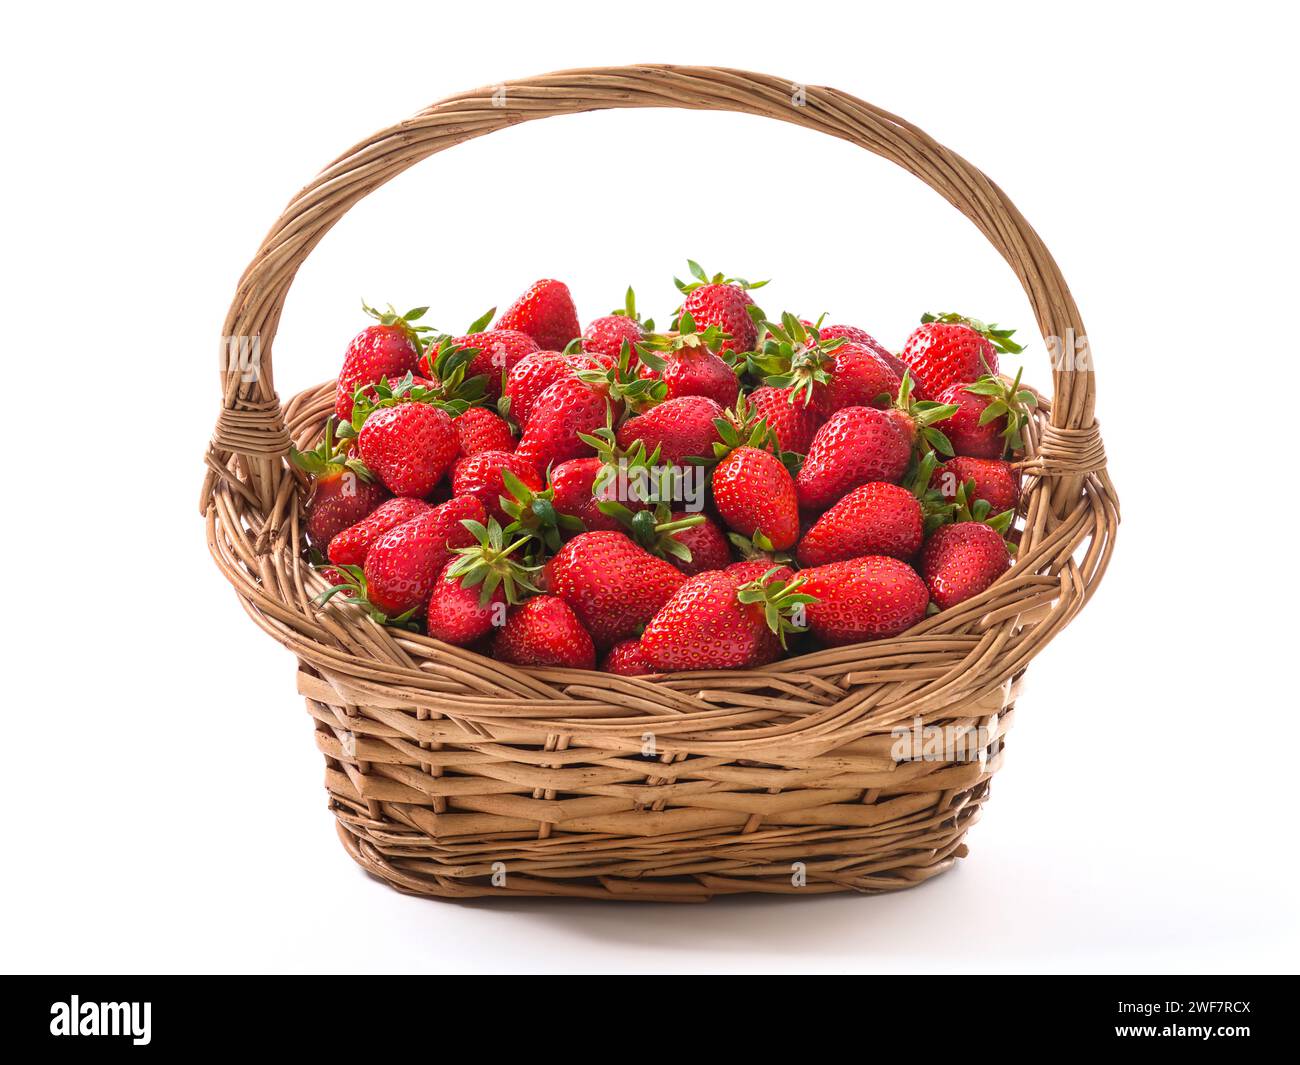 Panier vintage plein de fraises mûres fraîchement récoltées, rouge vif, fruits sains et délicieux, isolé sur blanc Banque D'Images